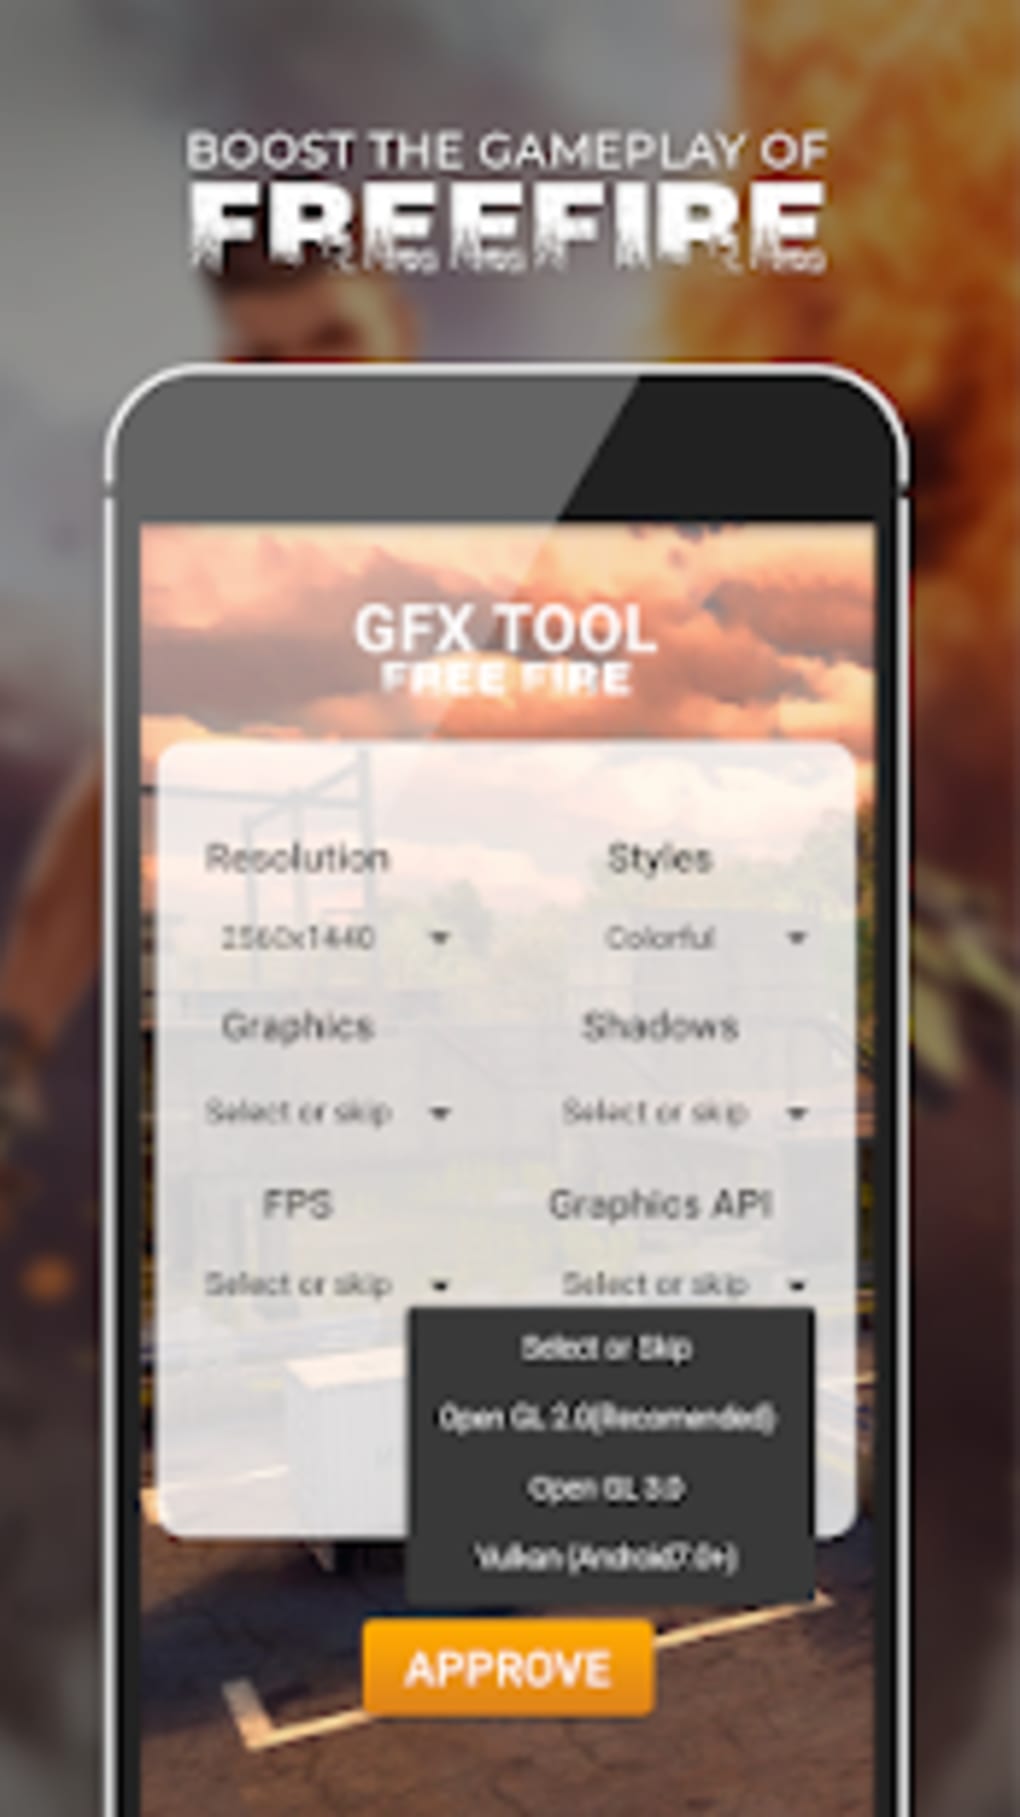 Gfx tool for pubg на айфон фото 101